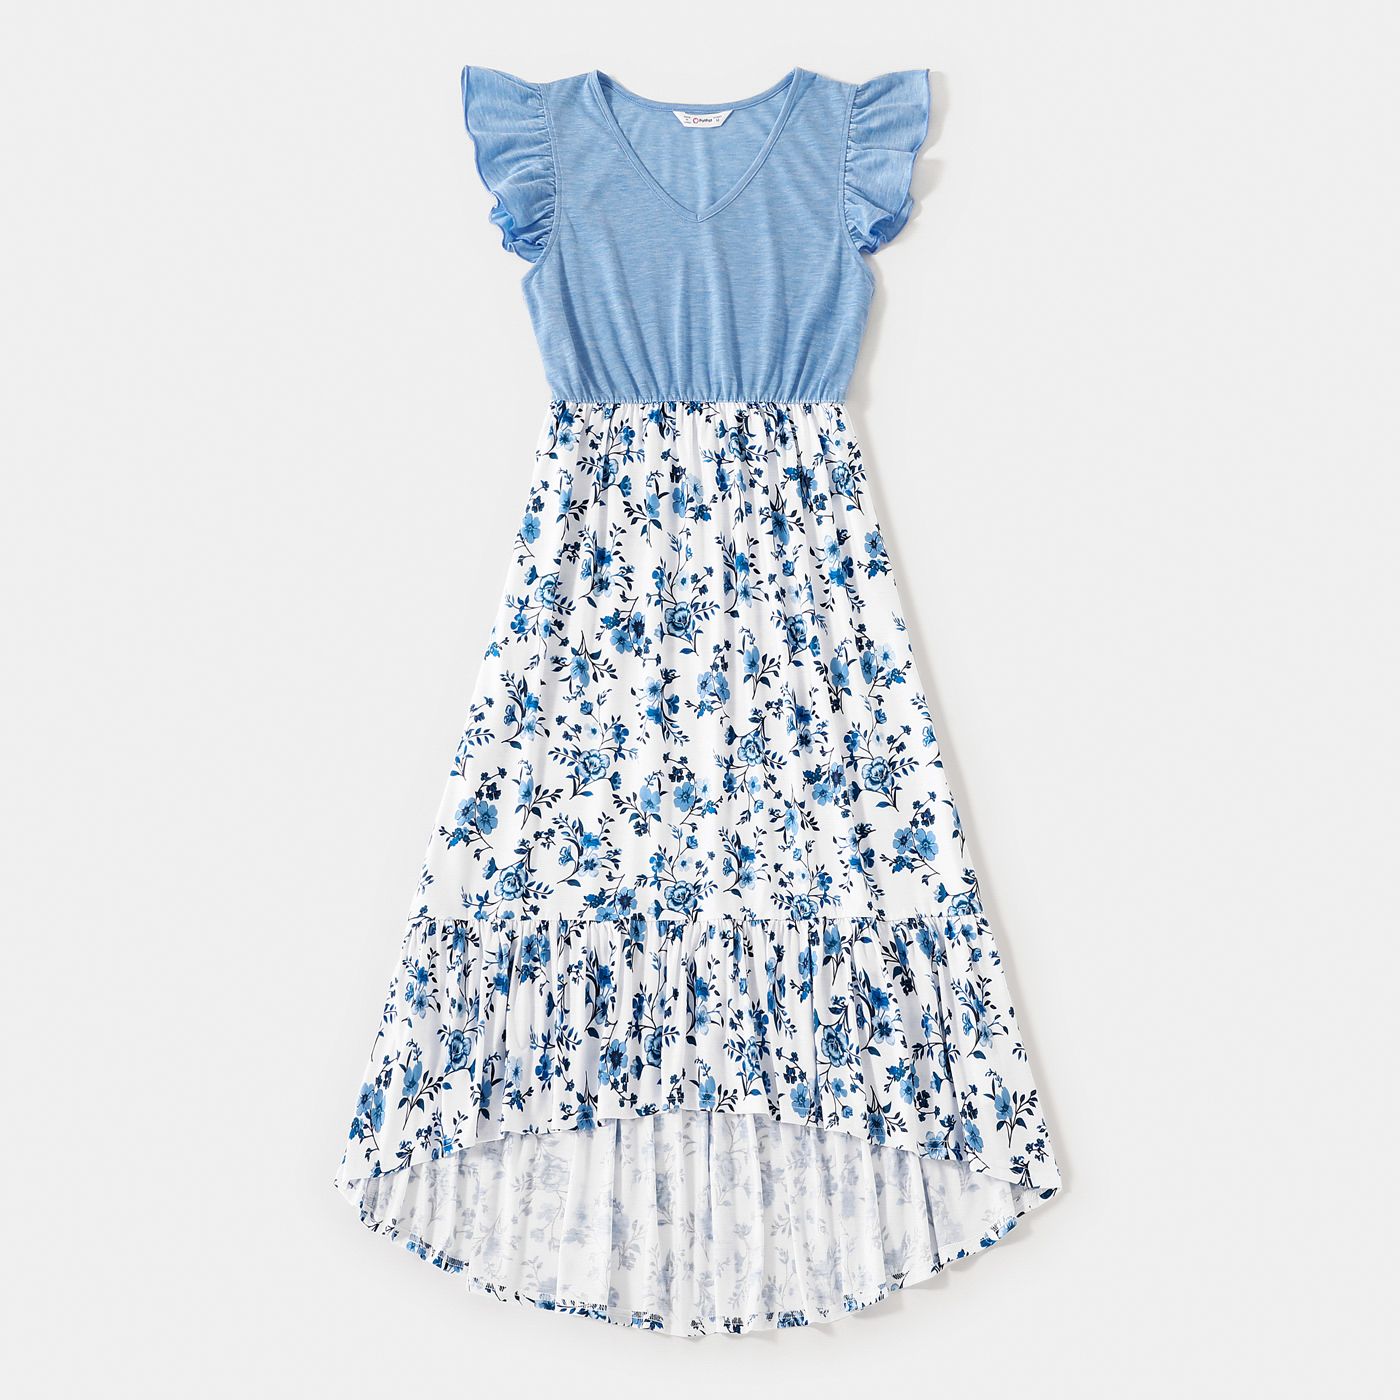 Family Matching Light Blue V Neck Flutter-sleeve Splicing Floral Print Irregular Hem Dresses And Striped T-shirts Sets